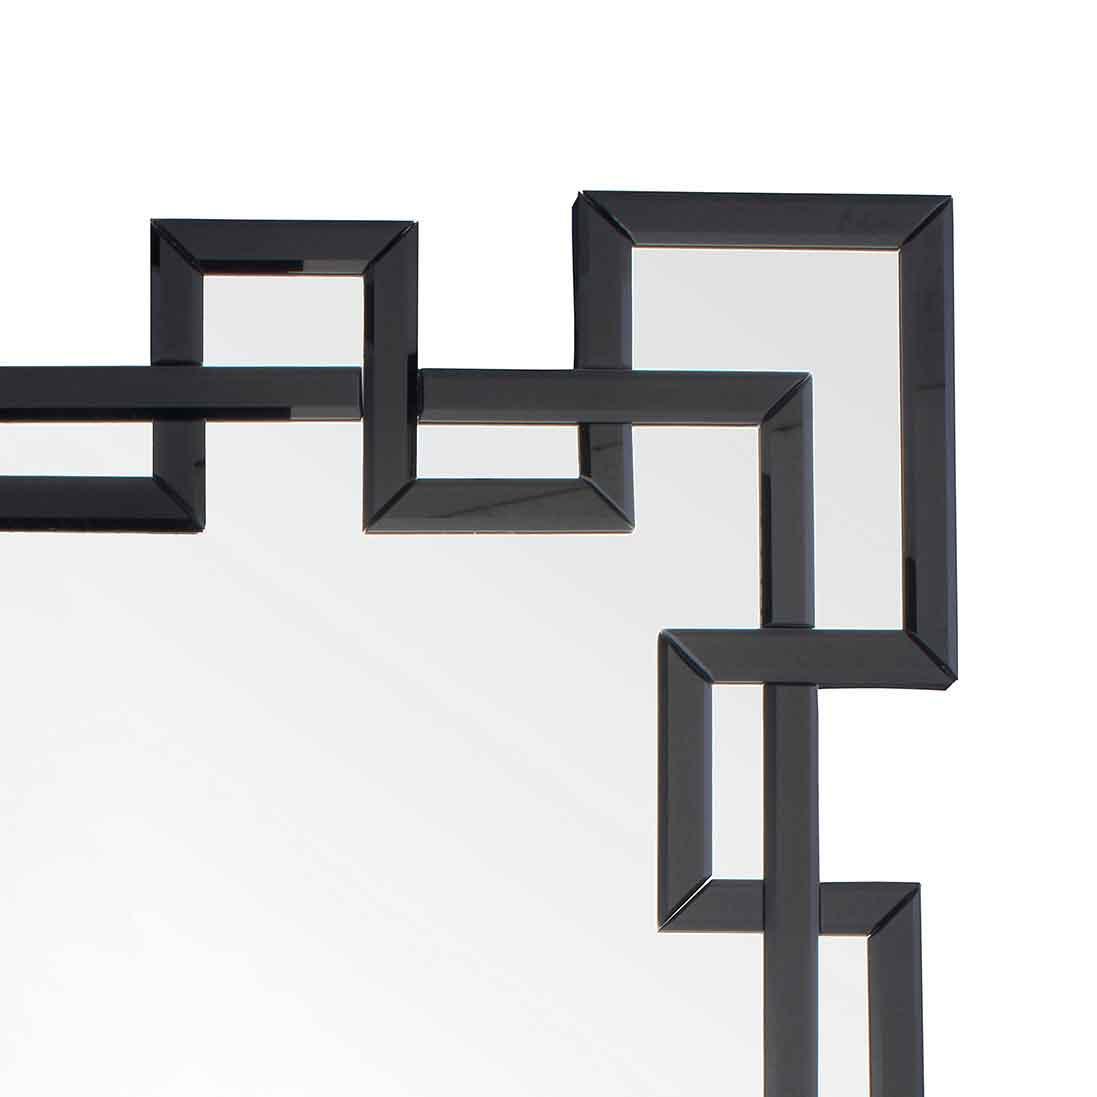 angolo di specchio rettangolare molato con fasce in vetro specchiato nero, molate e bisellate